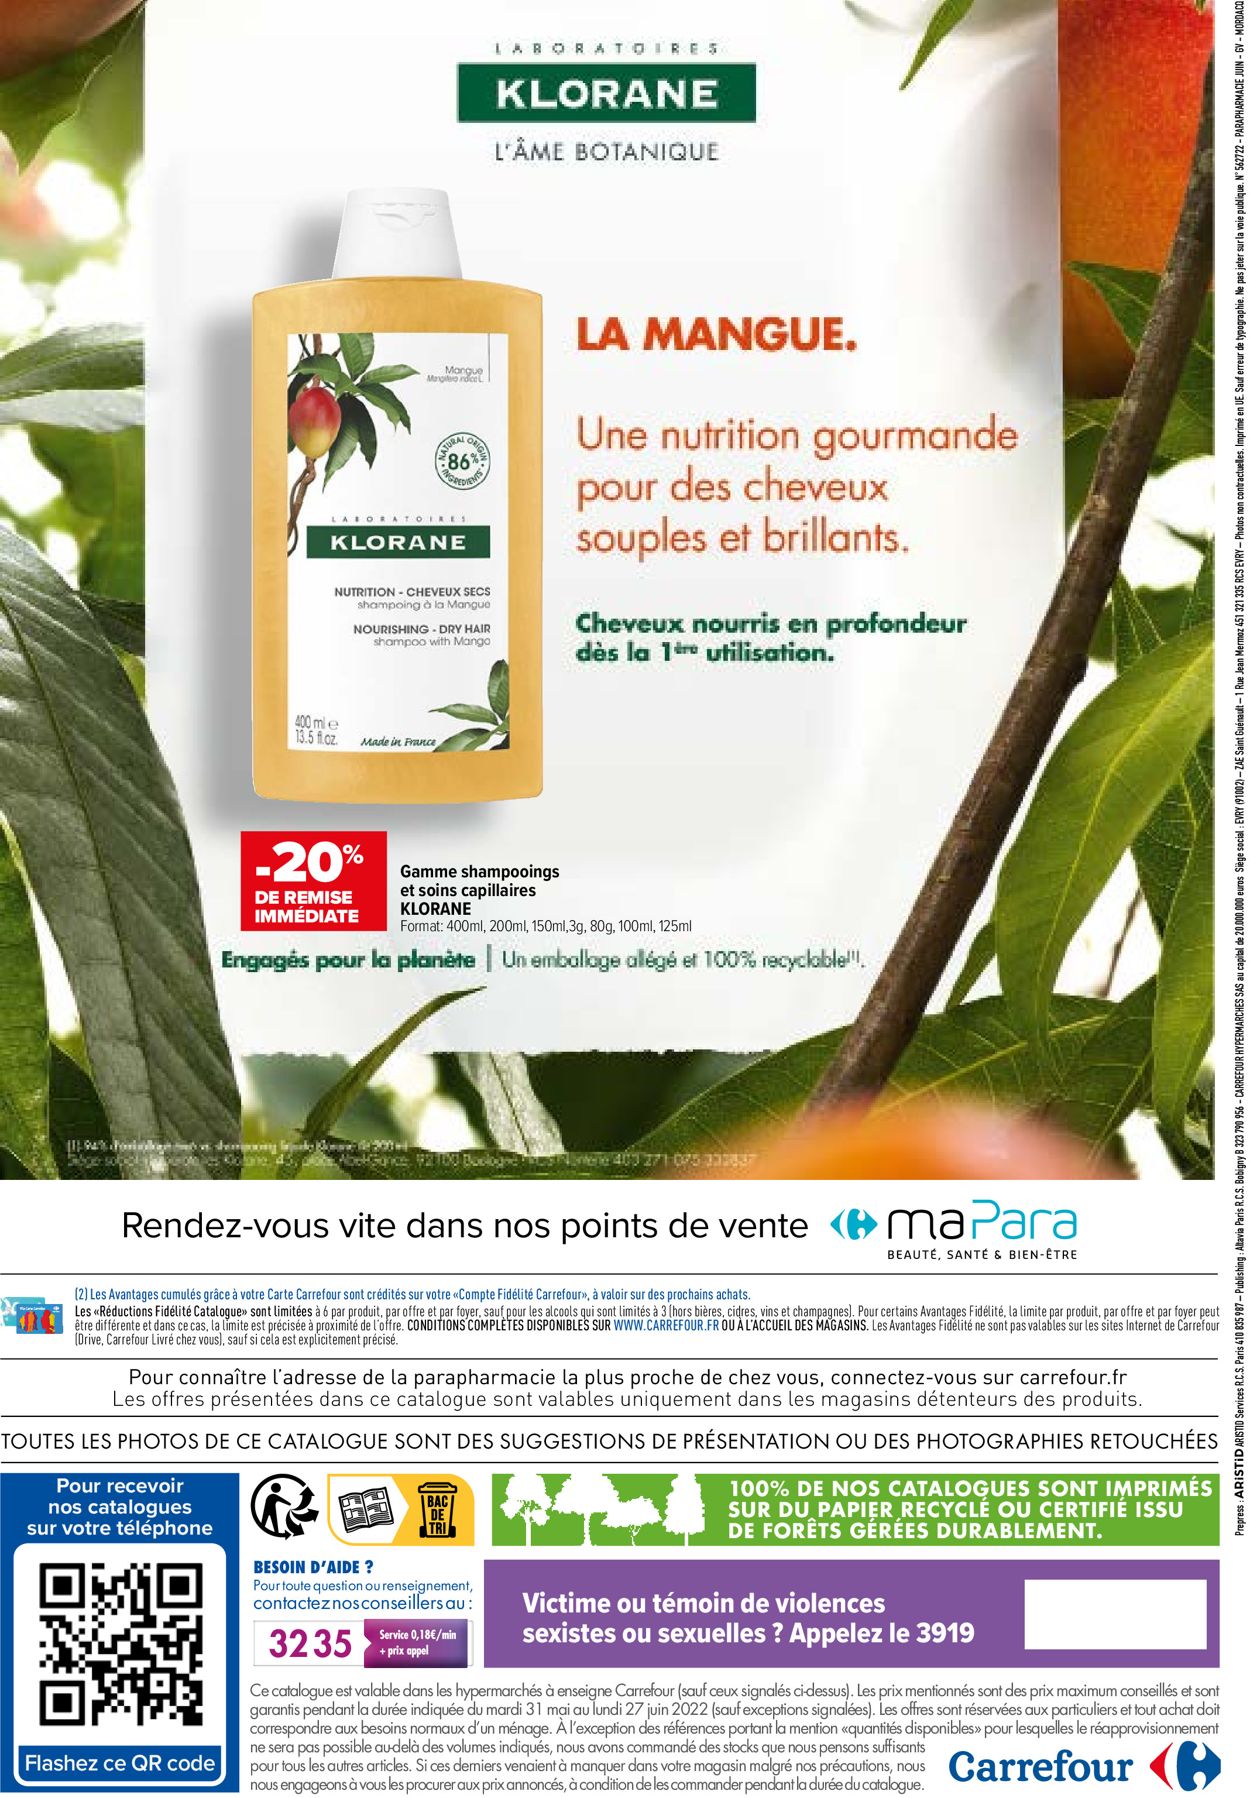 Carrefour Catalogue du 31.05.2022